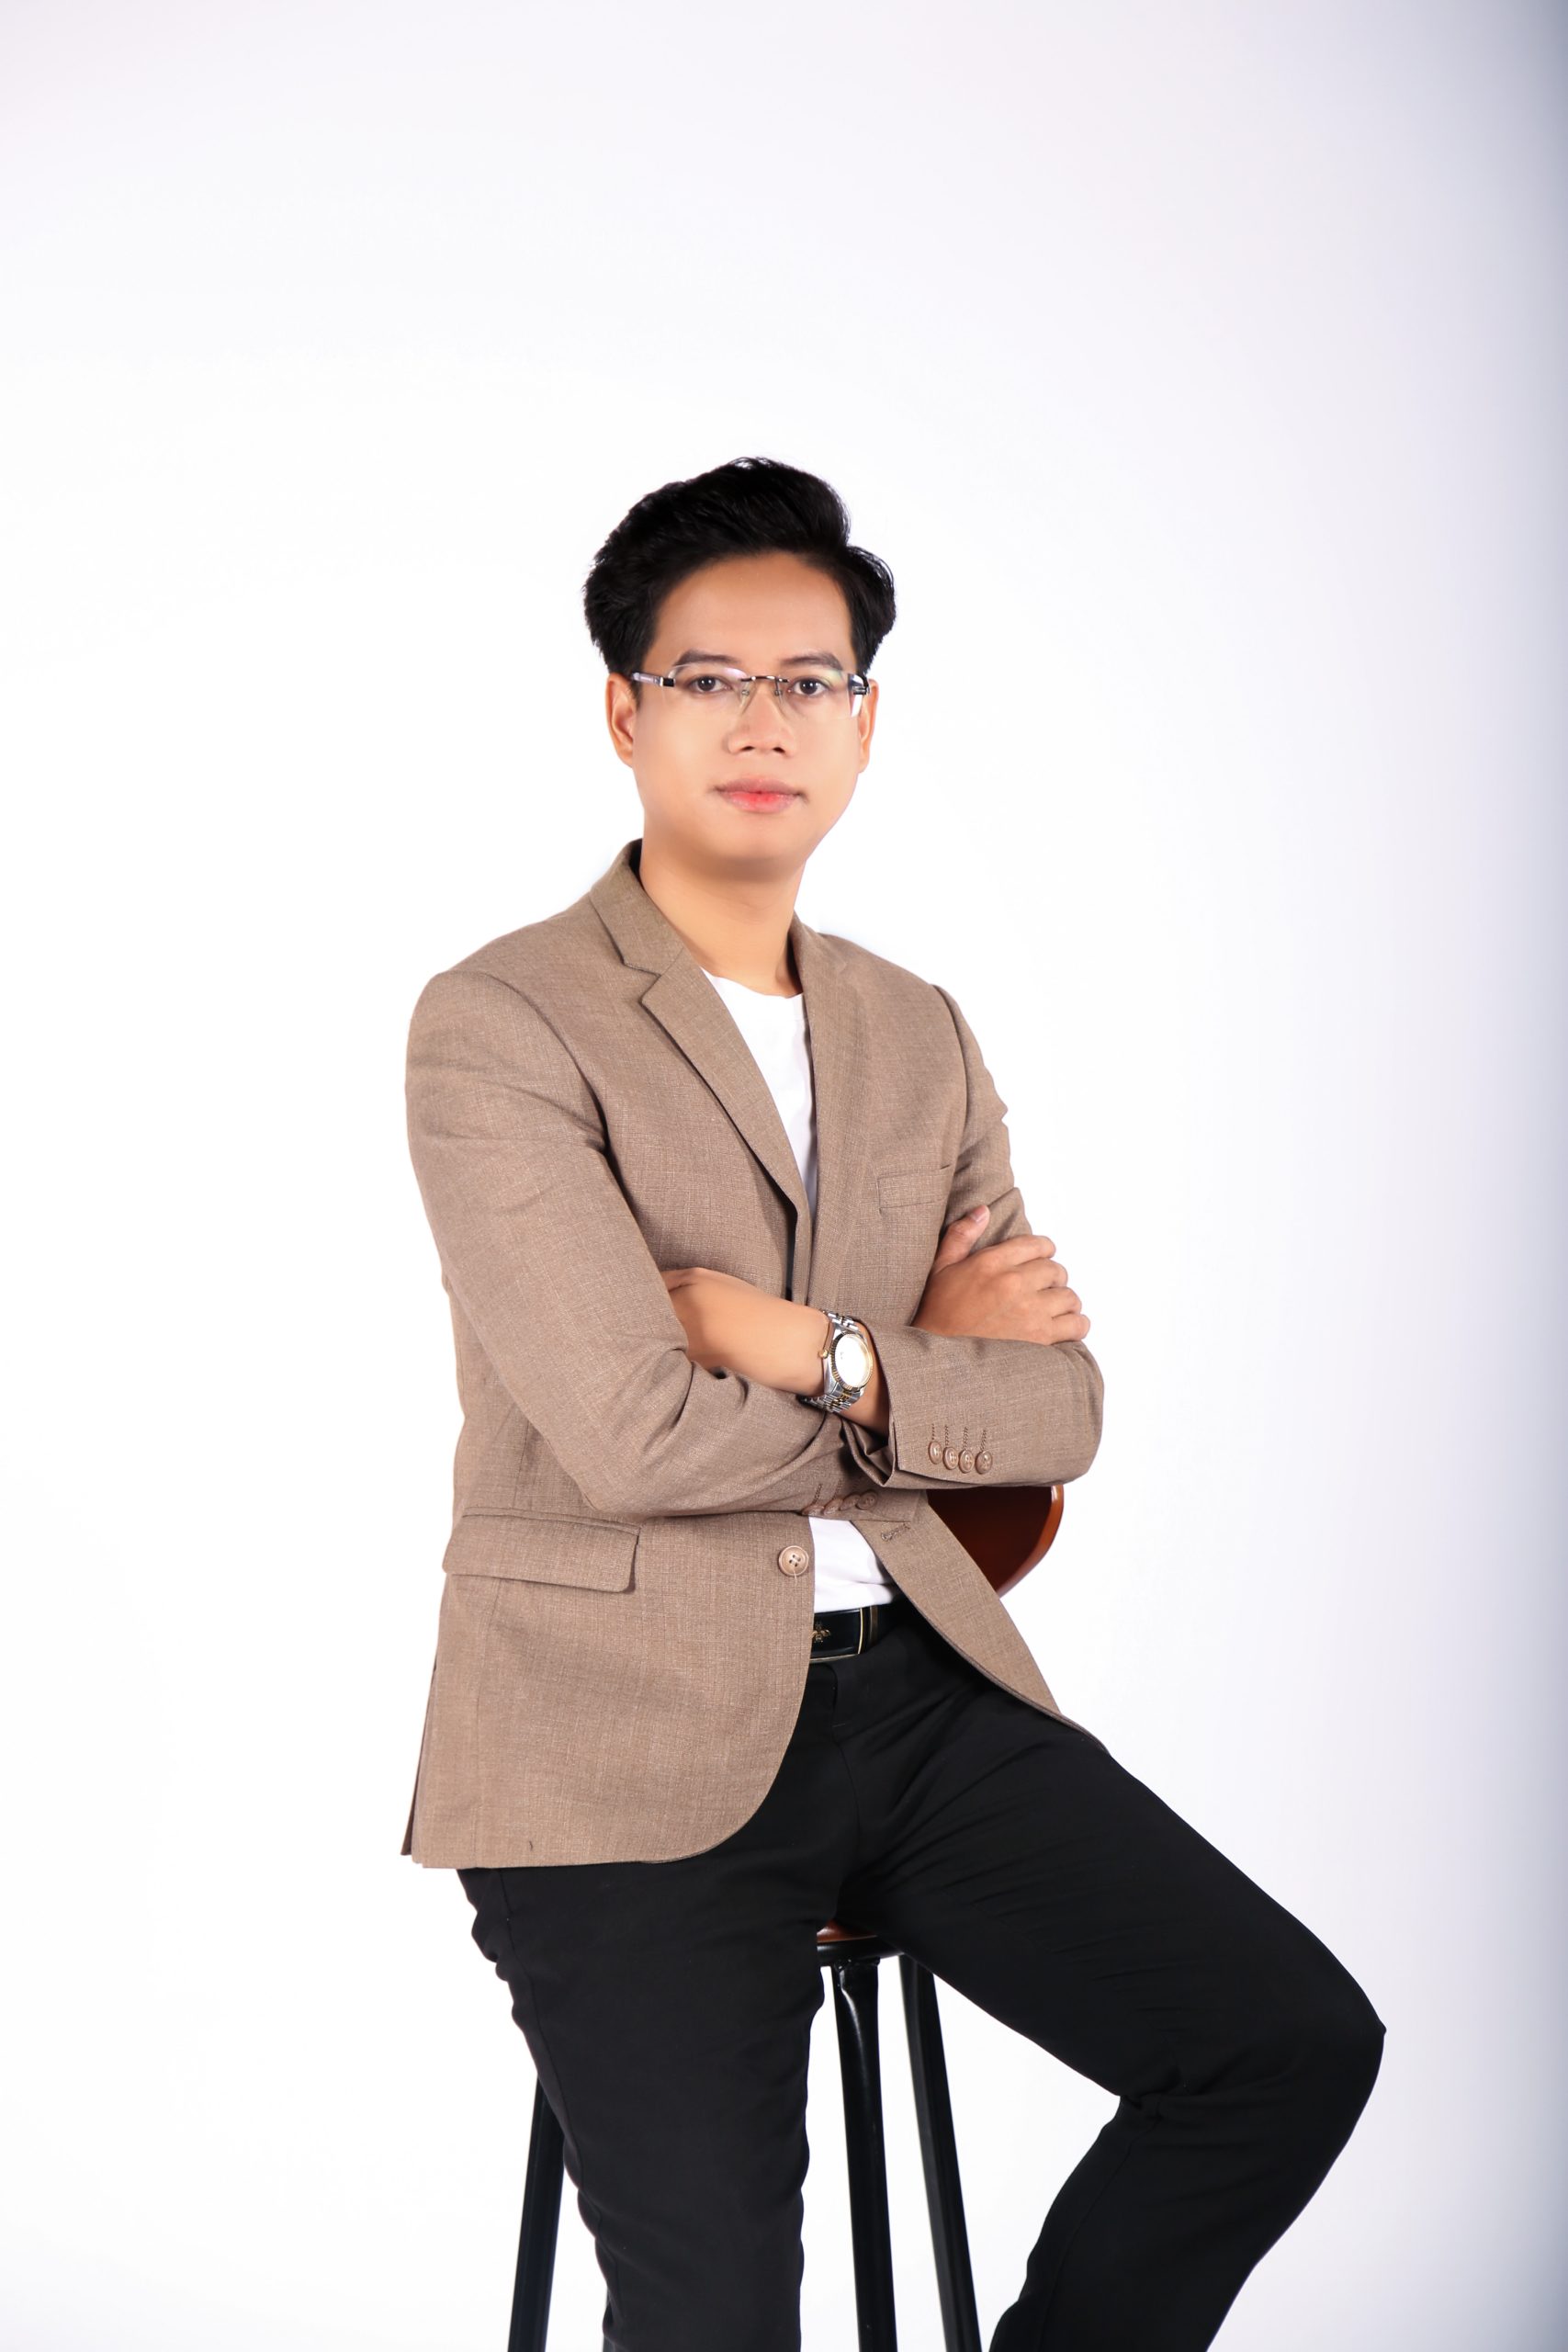 Anh Trần Hữu Tài lãnh đạo Start Marketing phát triển cùng những thách thức và cơ hội trong thời đại kỹ thuật số